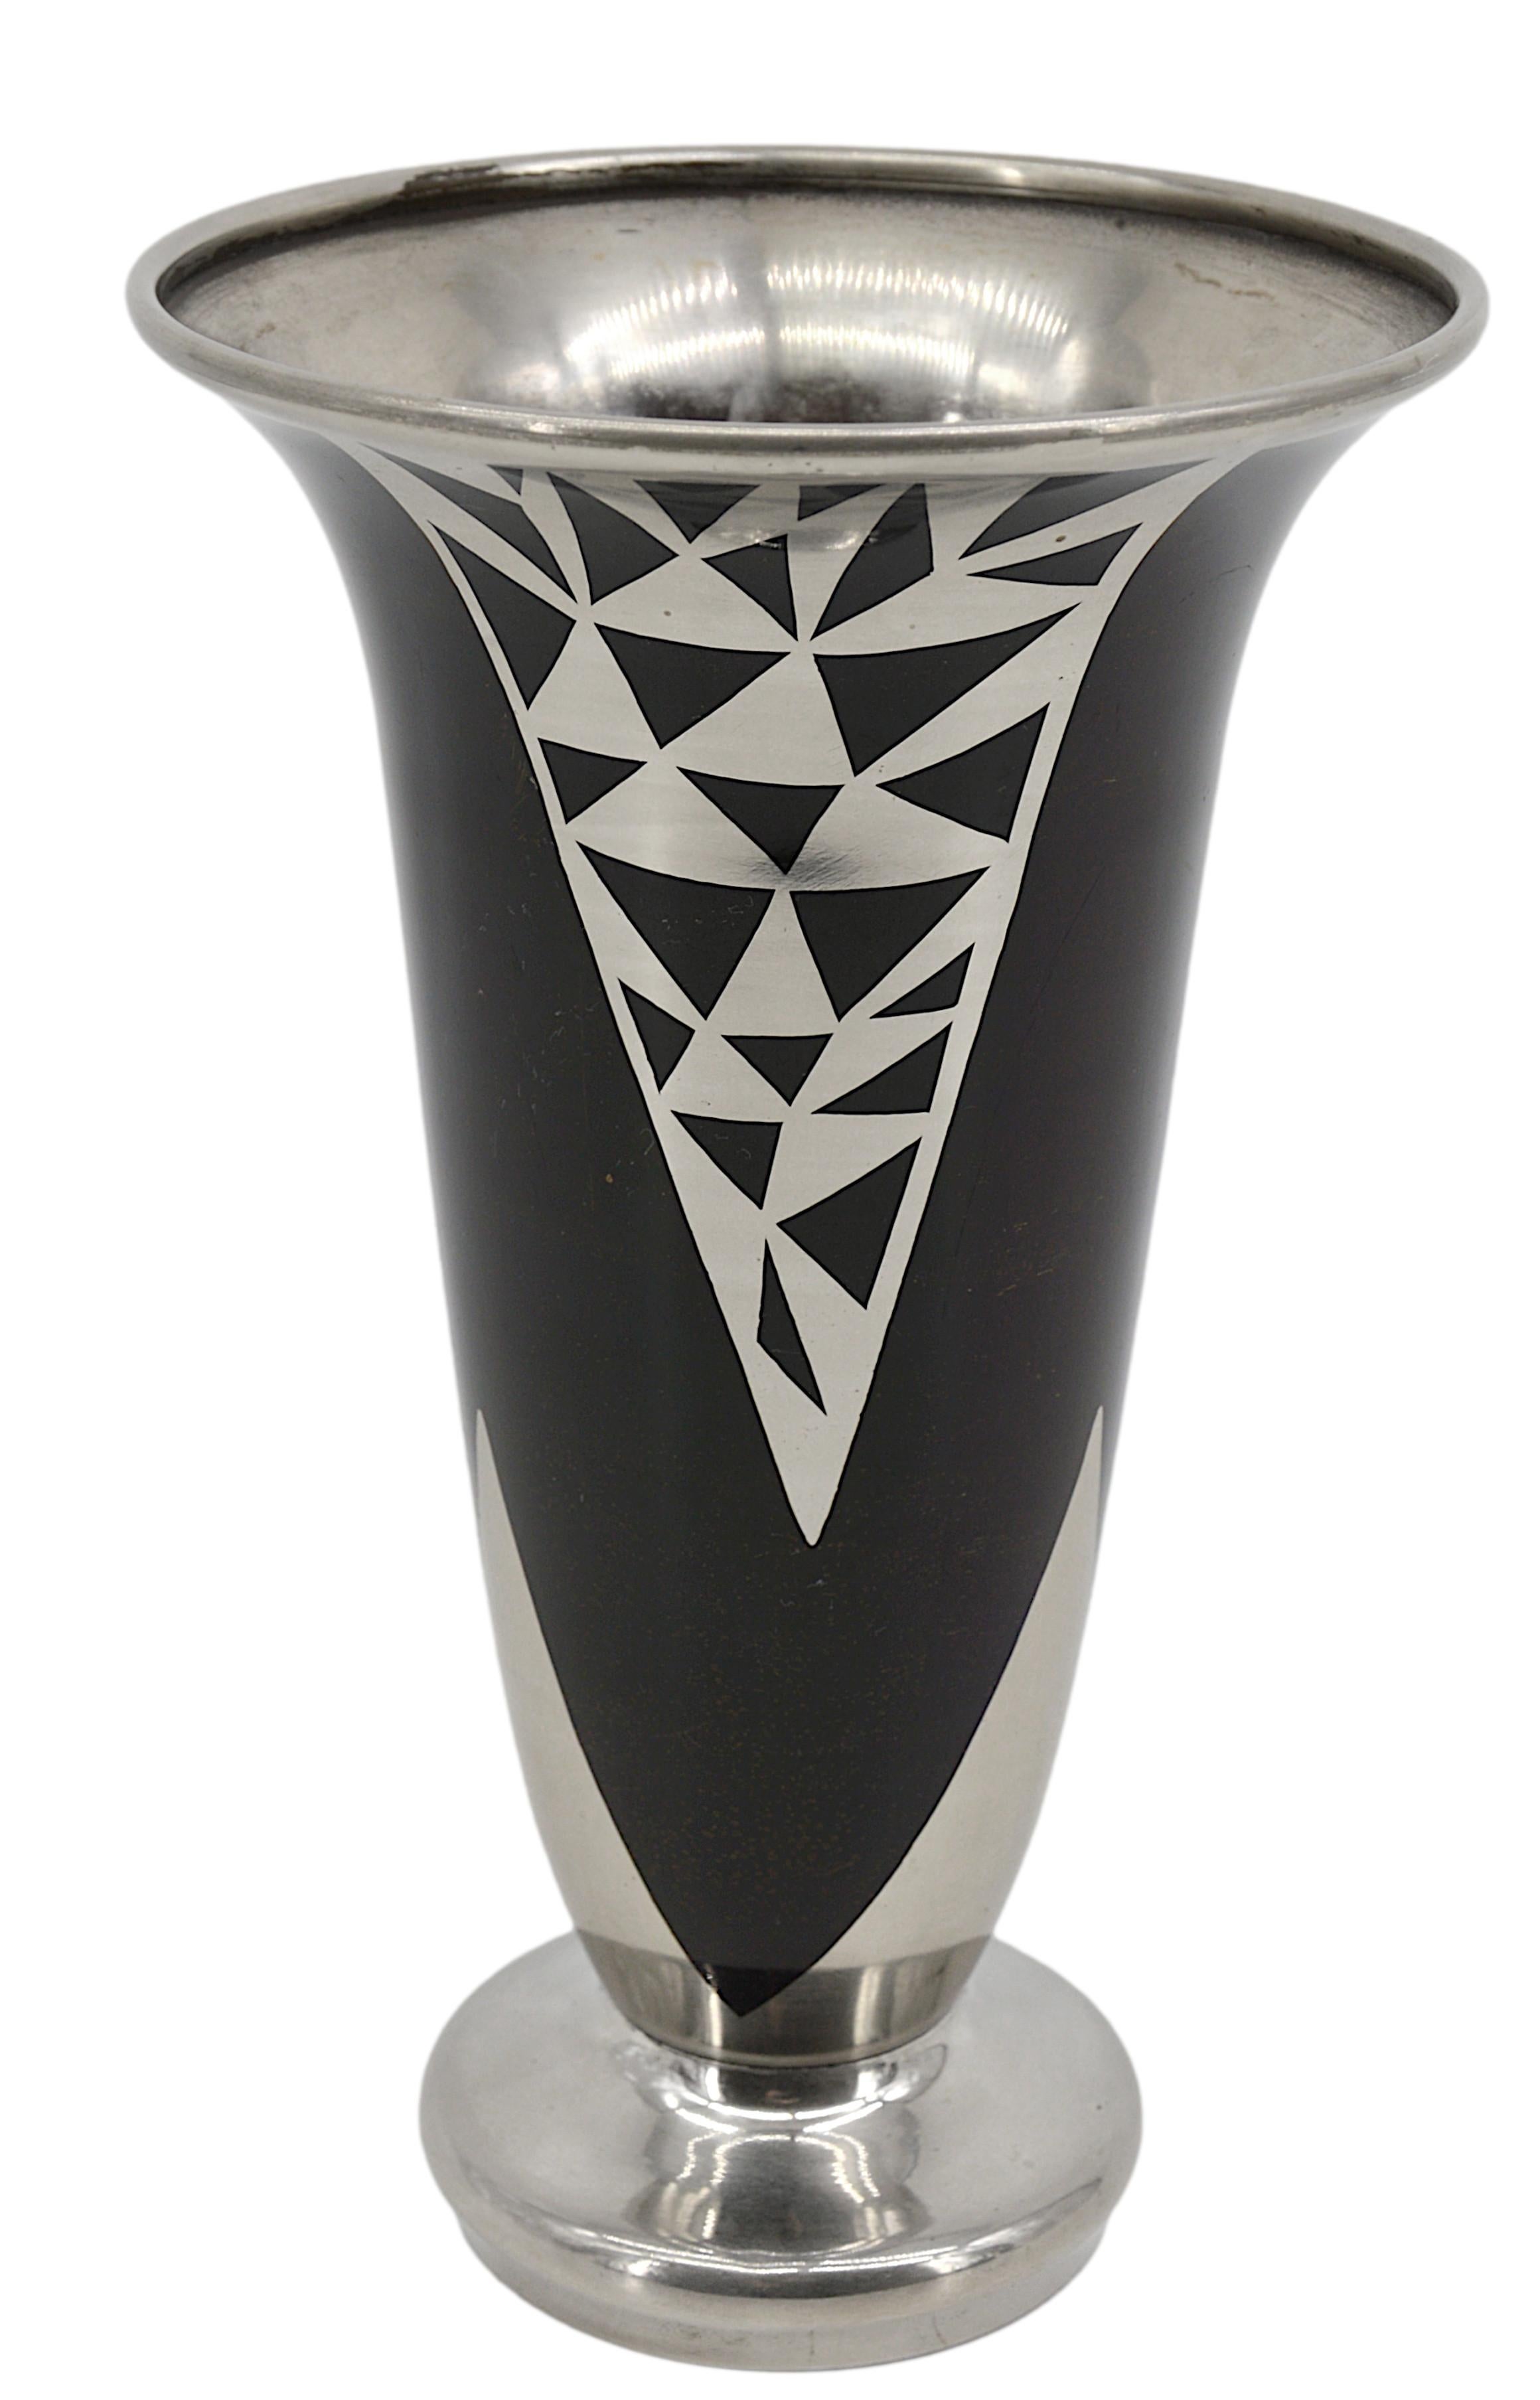 Art-Déco-Vase aus Messing von Jacques Douau, Frankreich, 1937. Geometrisches versilbertes Muster mit dunkelbrauner Patina. Maße: Höhe: 10,2 